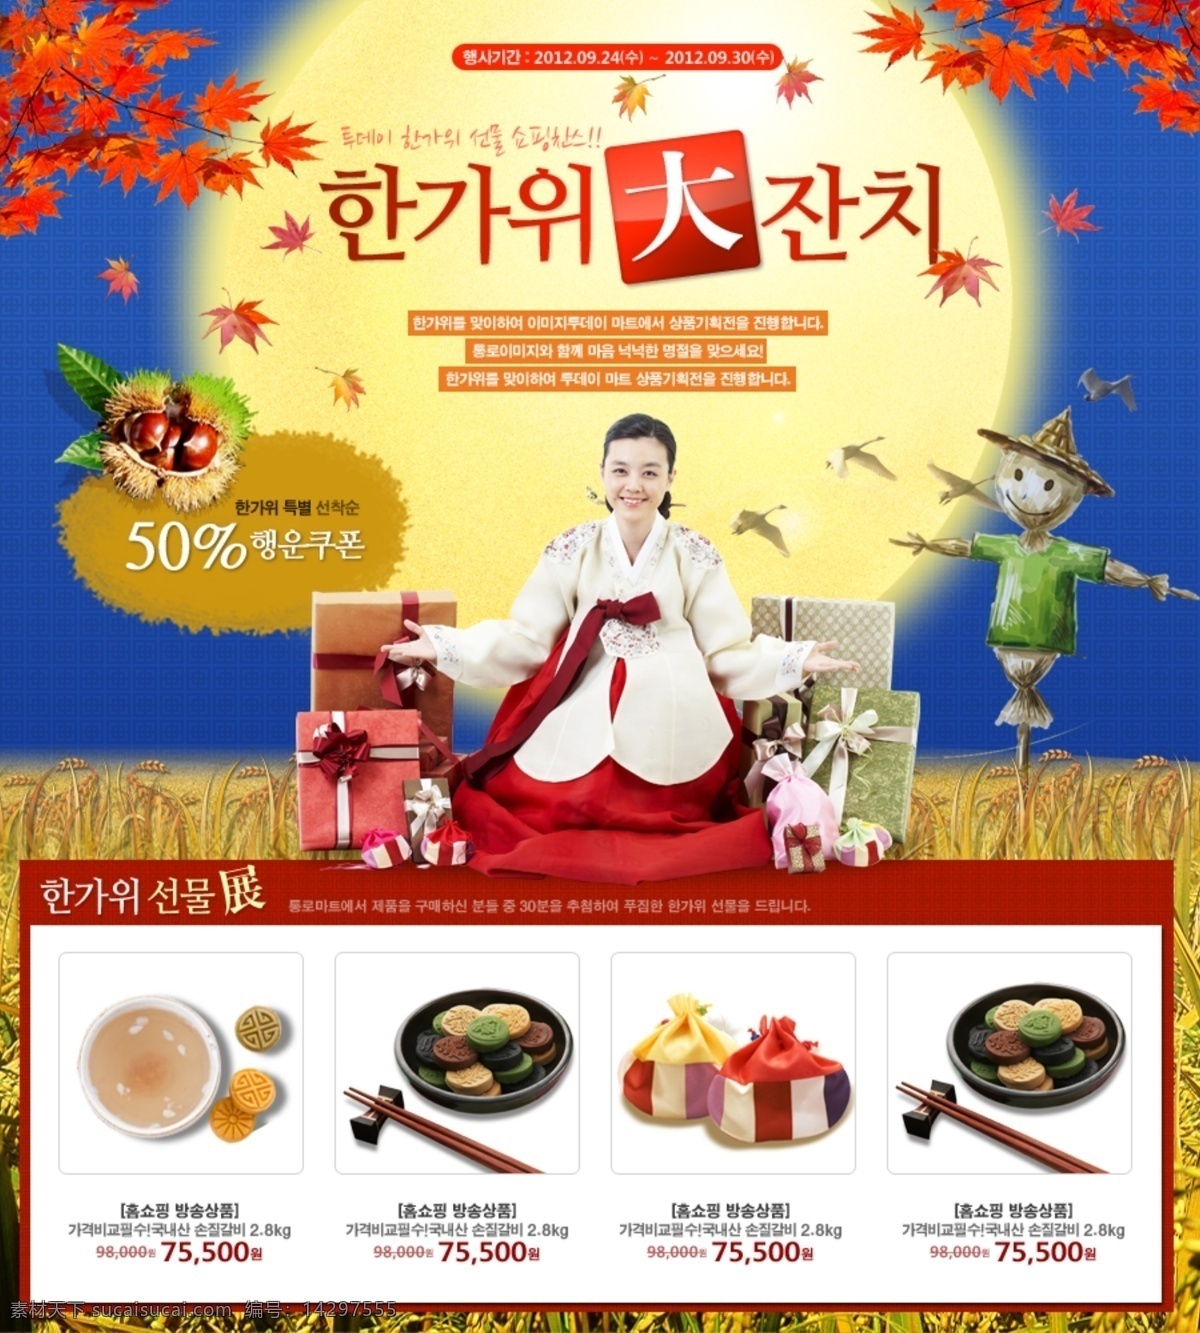 韩国 春节 网页 网页素材 网页模板 网页模板素材 网页界面模板 网页设计